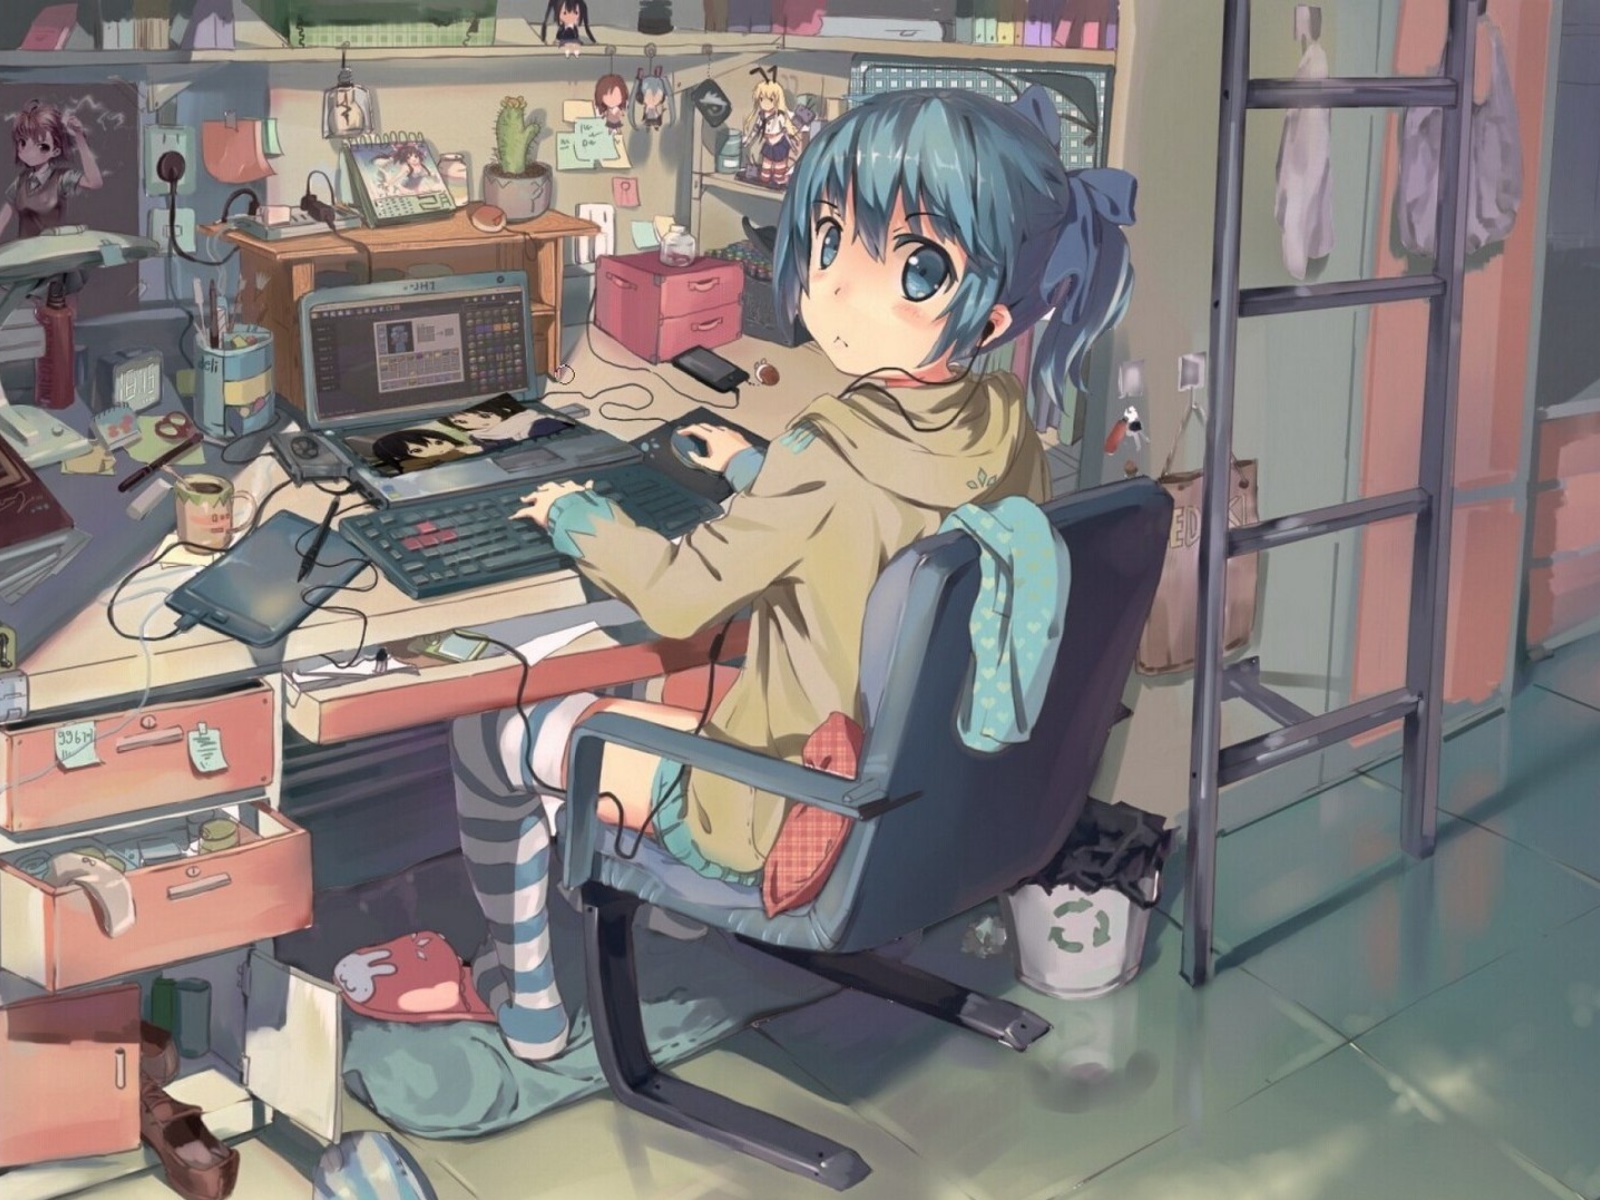 Fondo de pantalla Anime girl Computer designer 1600x1200